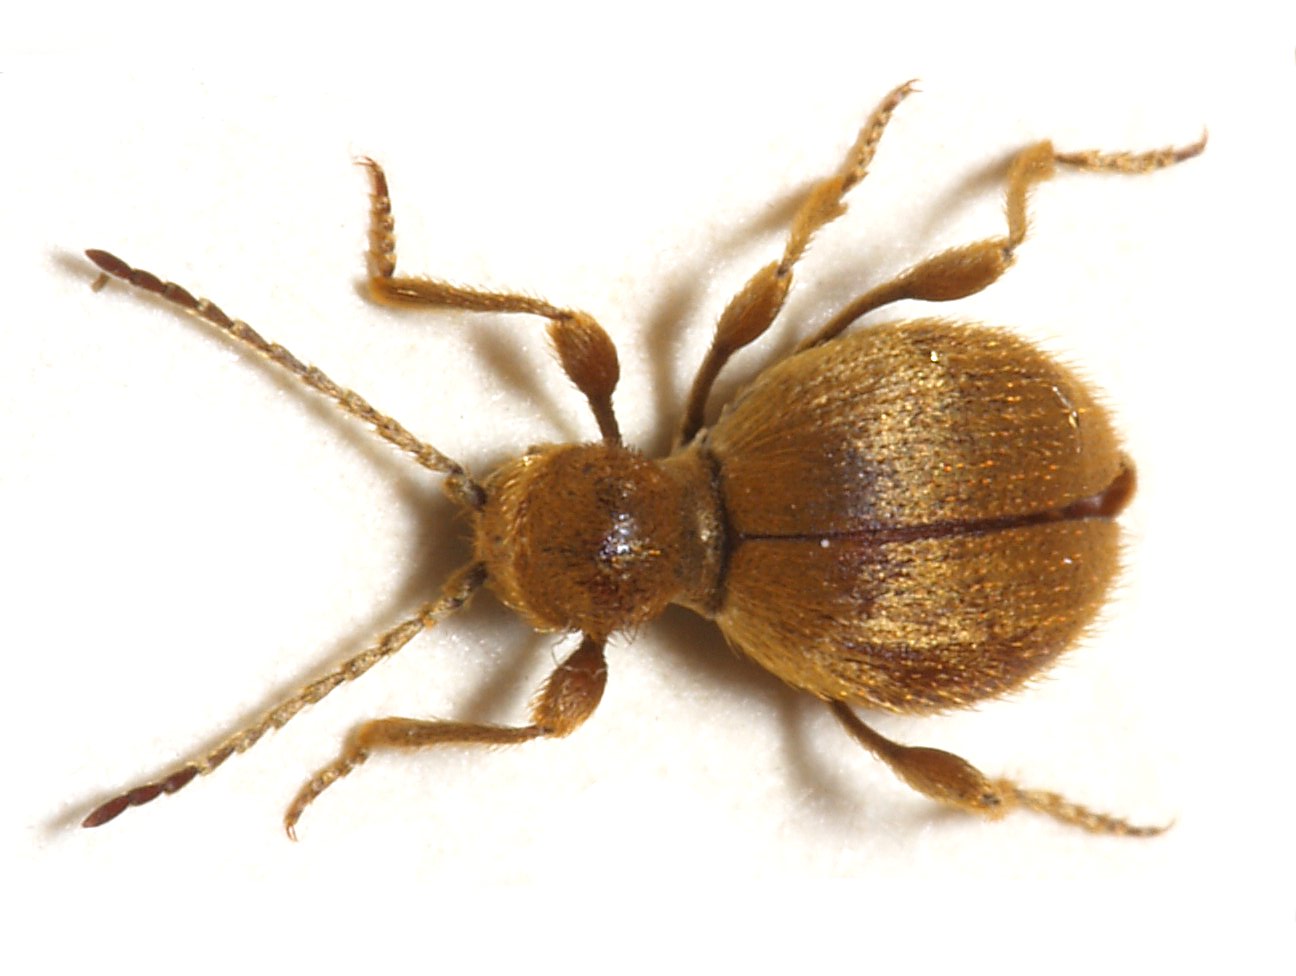 Golden Spider Beetle